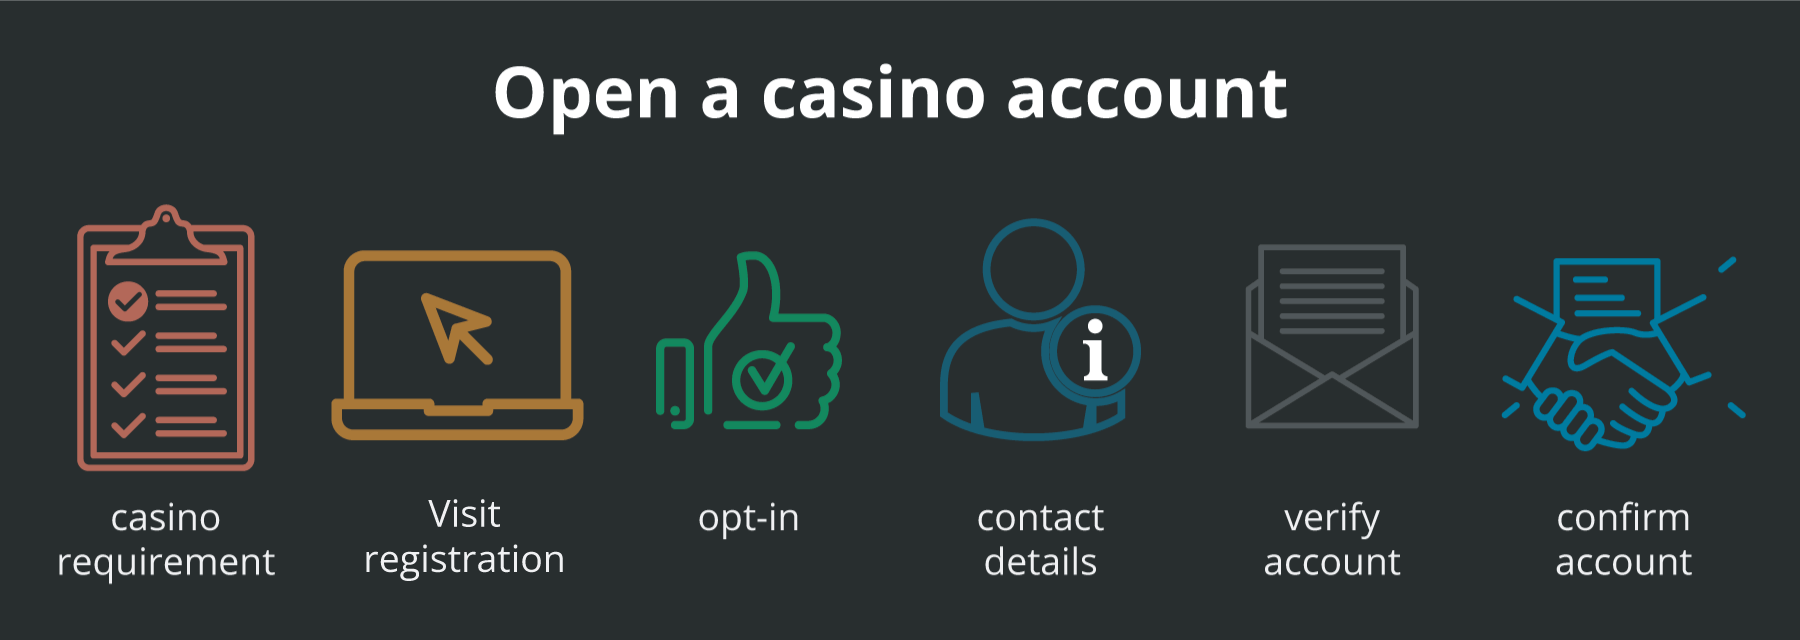 How to open a casino account online casino UAE - Emirates Casino - UAE Casinos 